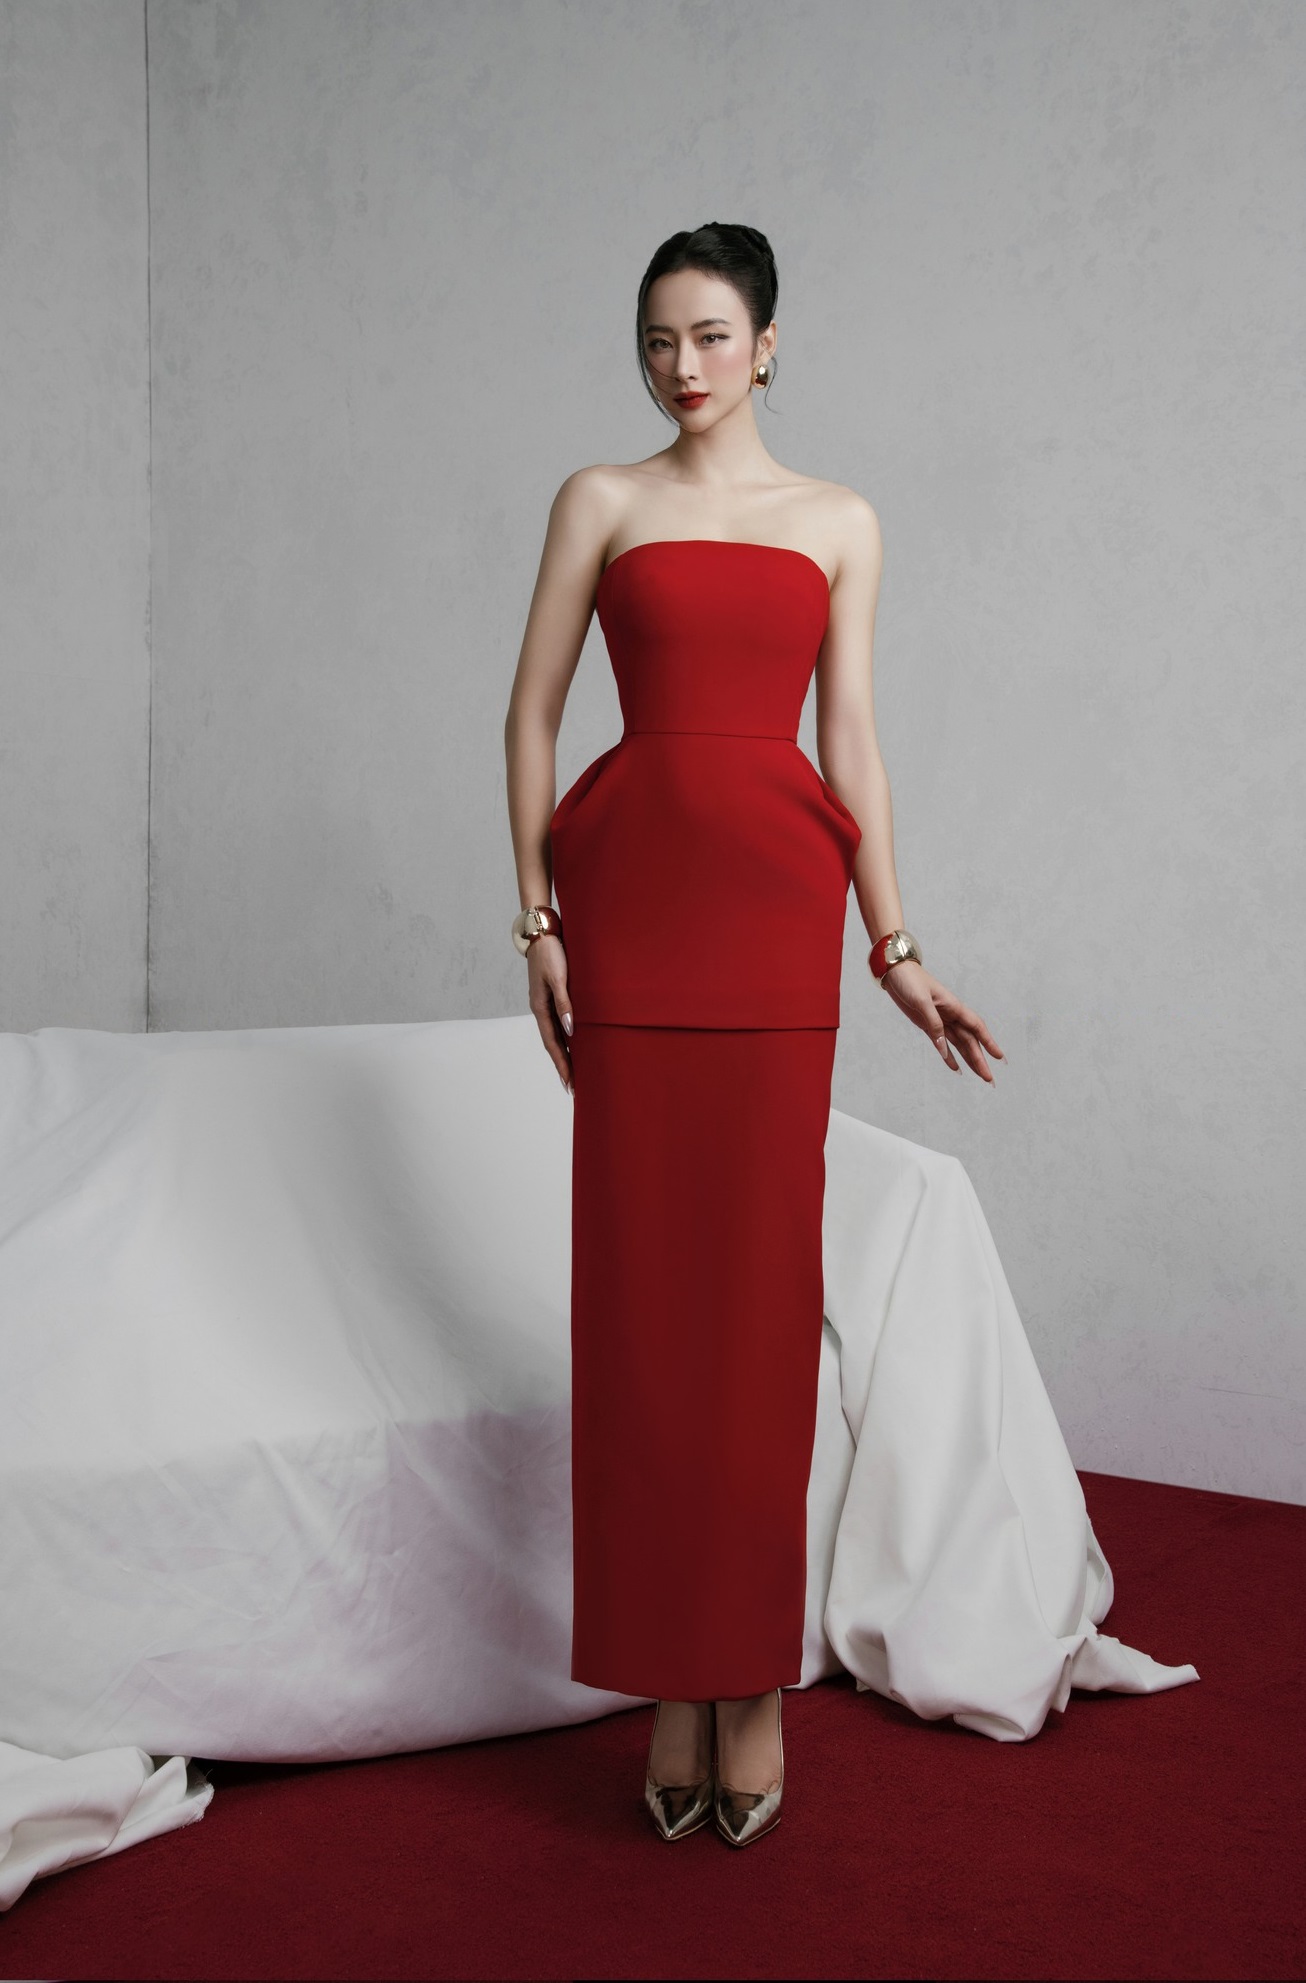 Địa chỉ mua váy đỏ dự tiệc tại Bắc Giang đẹp lịm tim – Topvay Fashion